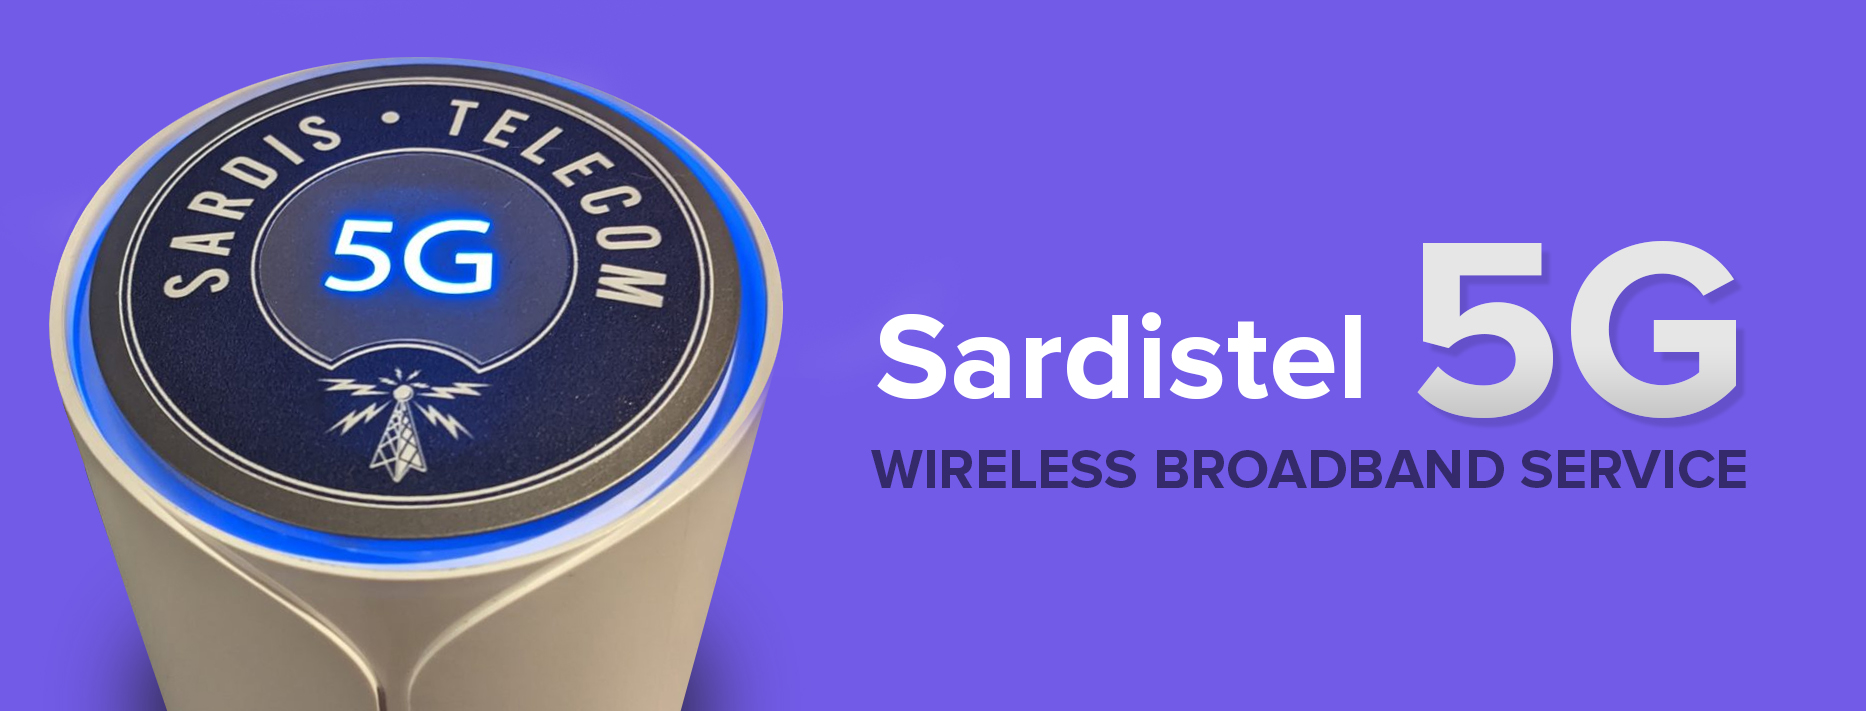 sardistel-new-5g-banner